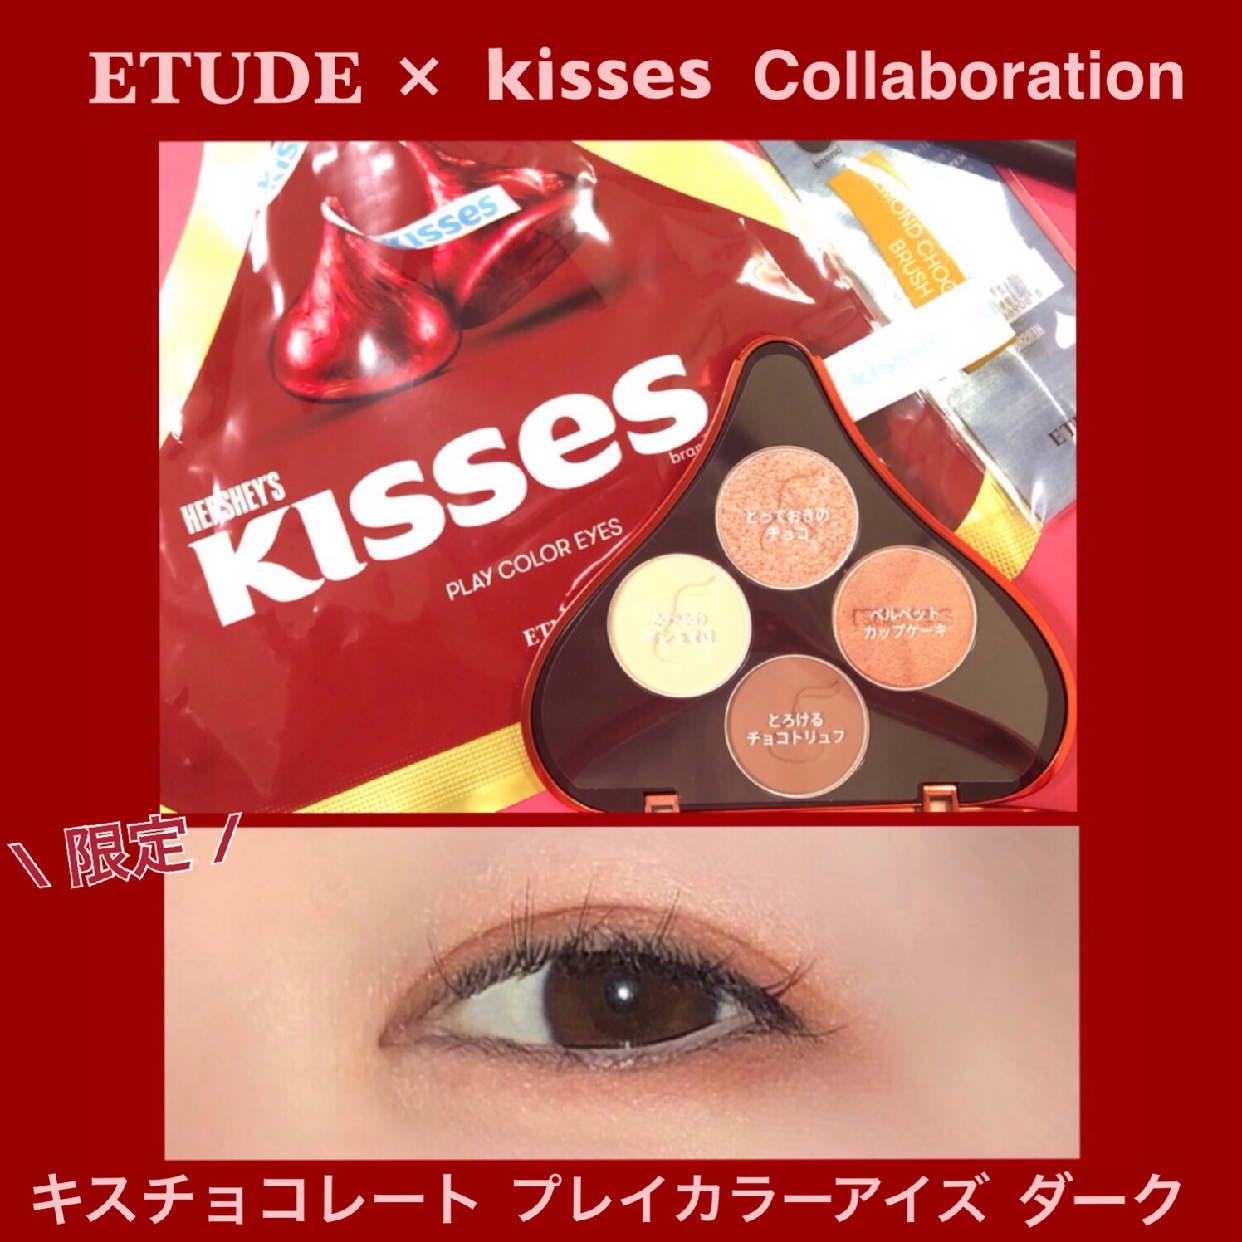 ETUDE HOUSE(エチュードハウス) キスチョコレート プレイカラーアイズを使ったmomokoさんのクチコミ画像1